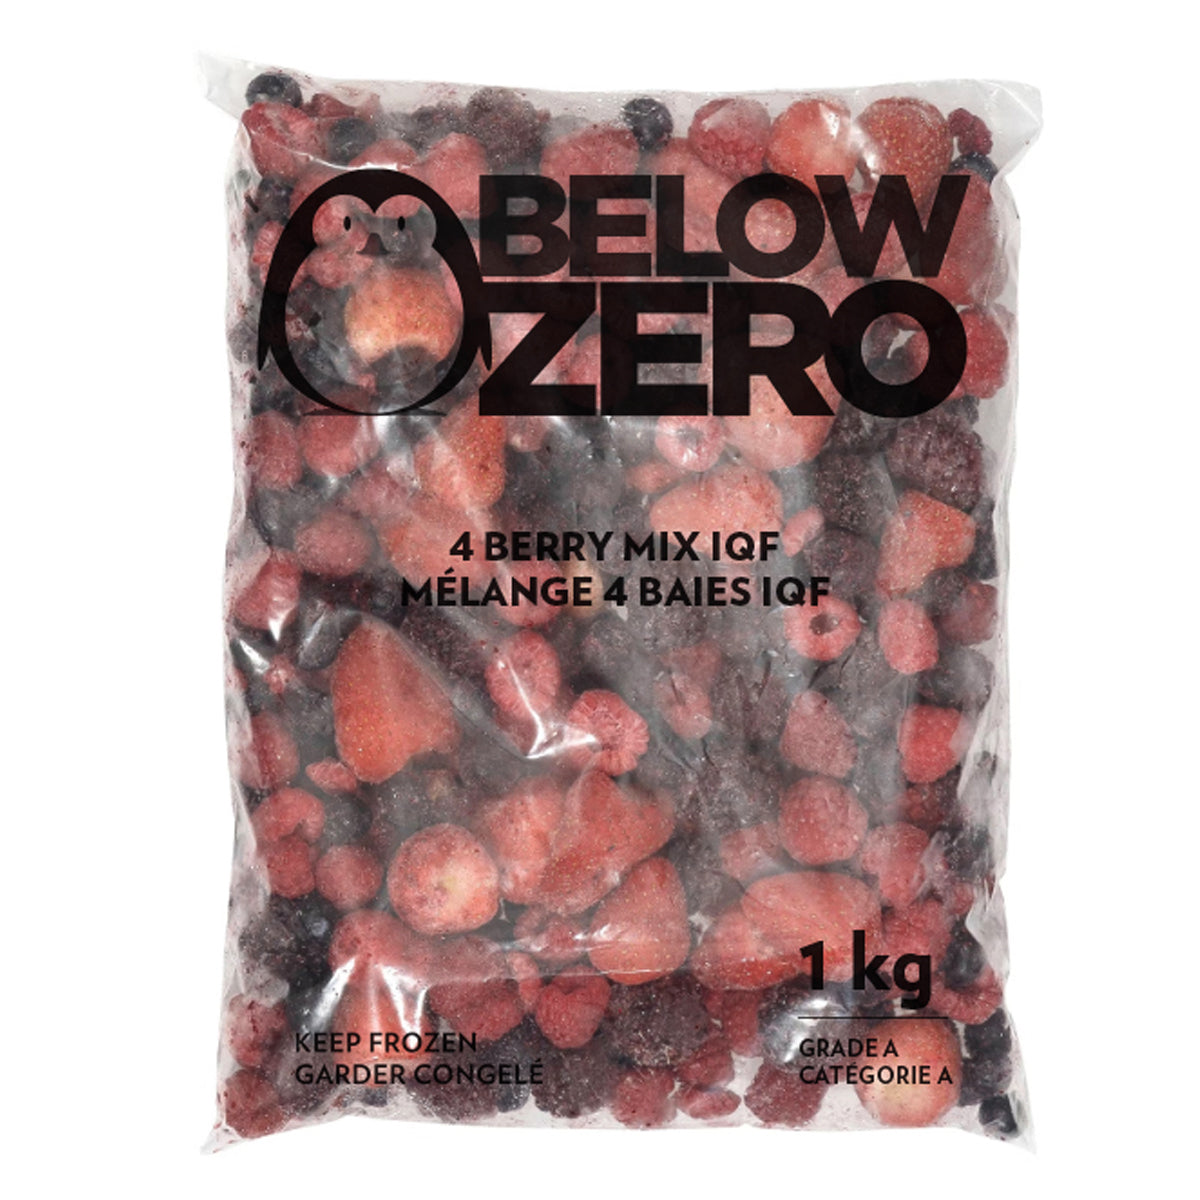 BELOW ZERO 4 berry mix